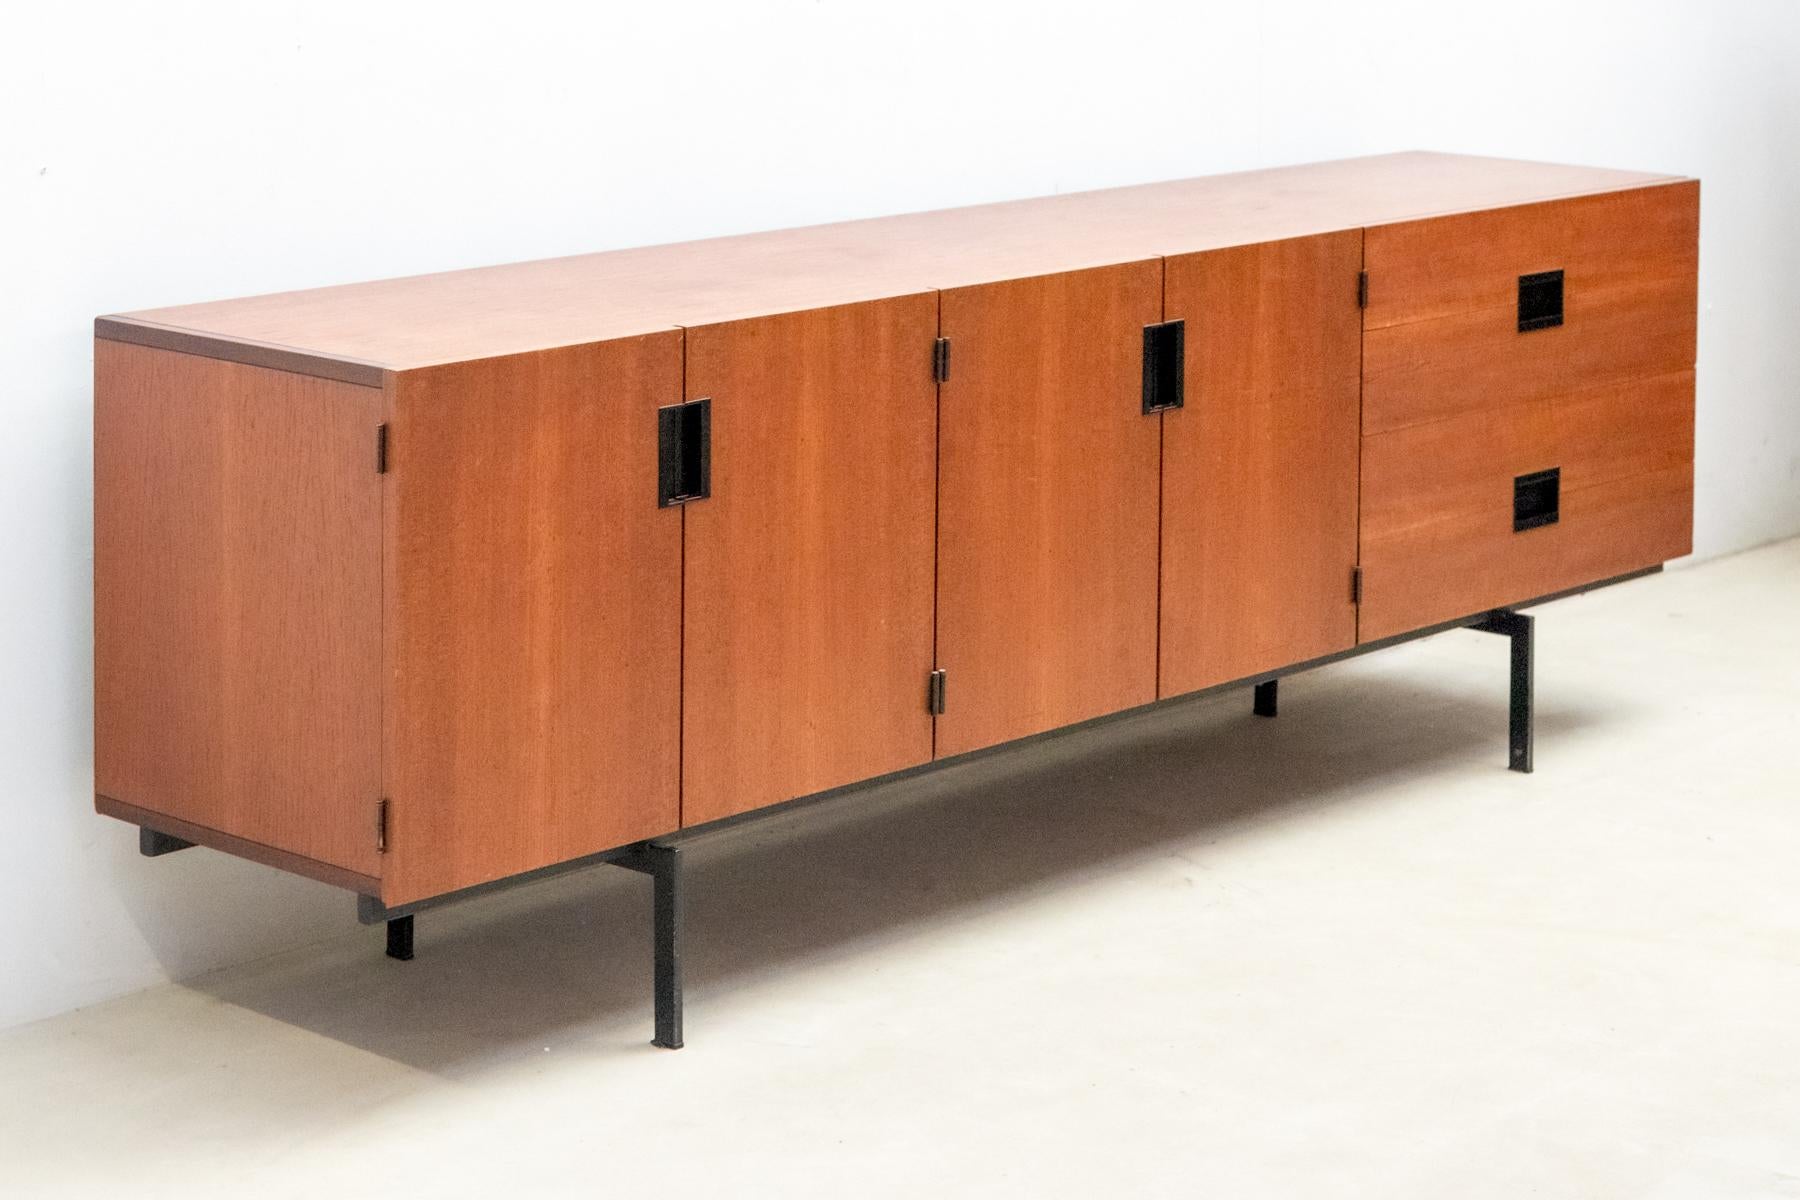 Das minimalistische Sideboard DU03, 1958 von Cees Braakman für Pastoe entworfen, ist ein niederländischer Designklassiker.
 Er ist aus Teakholz gefertigt und hat einen eleganten, schwarz lackierten Metallrahmen. 
Das Gehäuse ist mit schwarzen